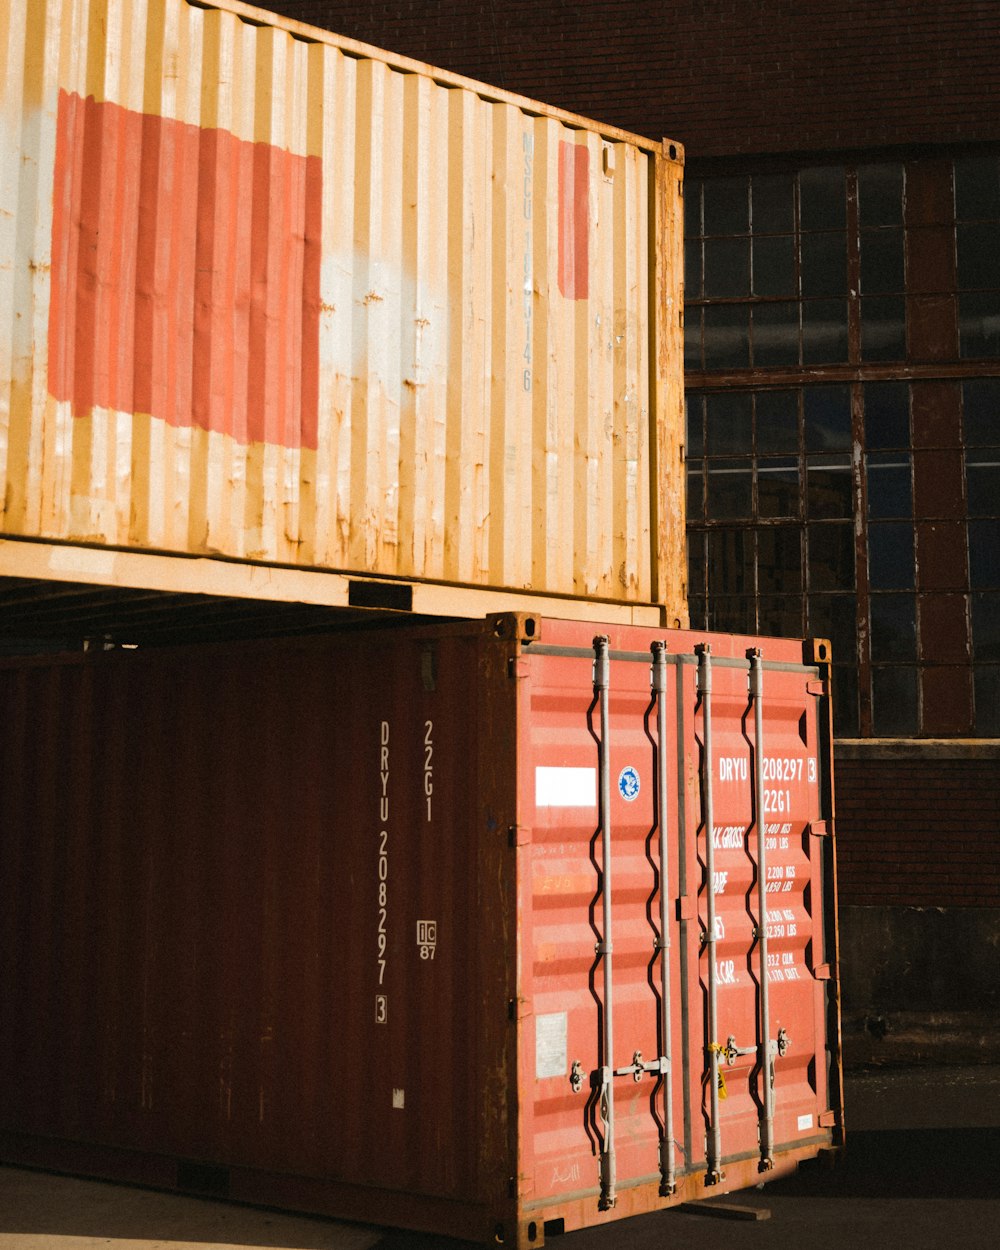 Container marroni e rossi